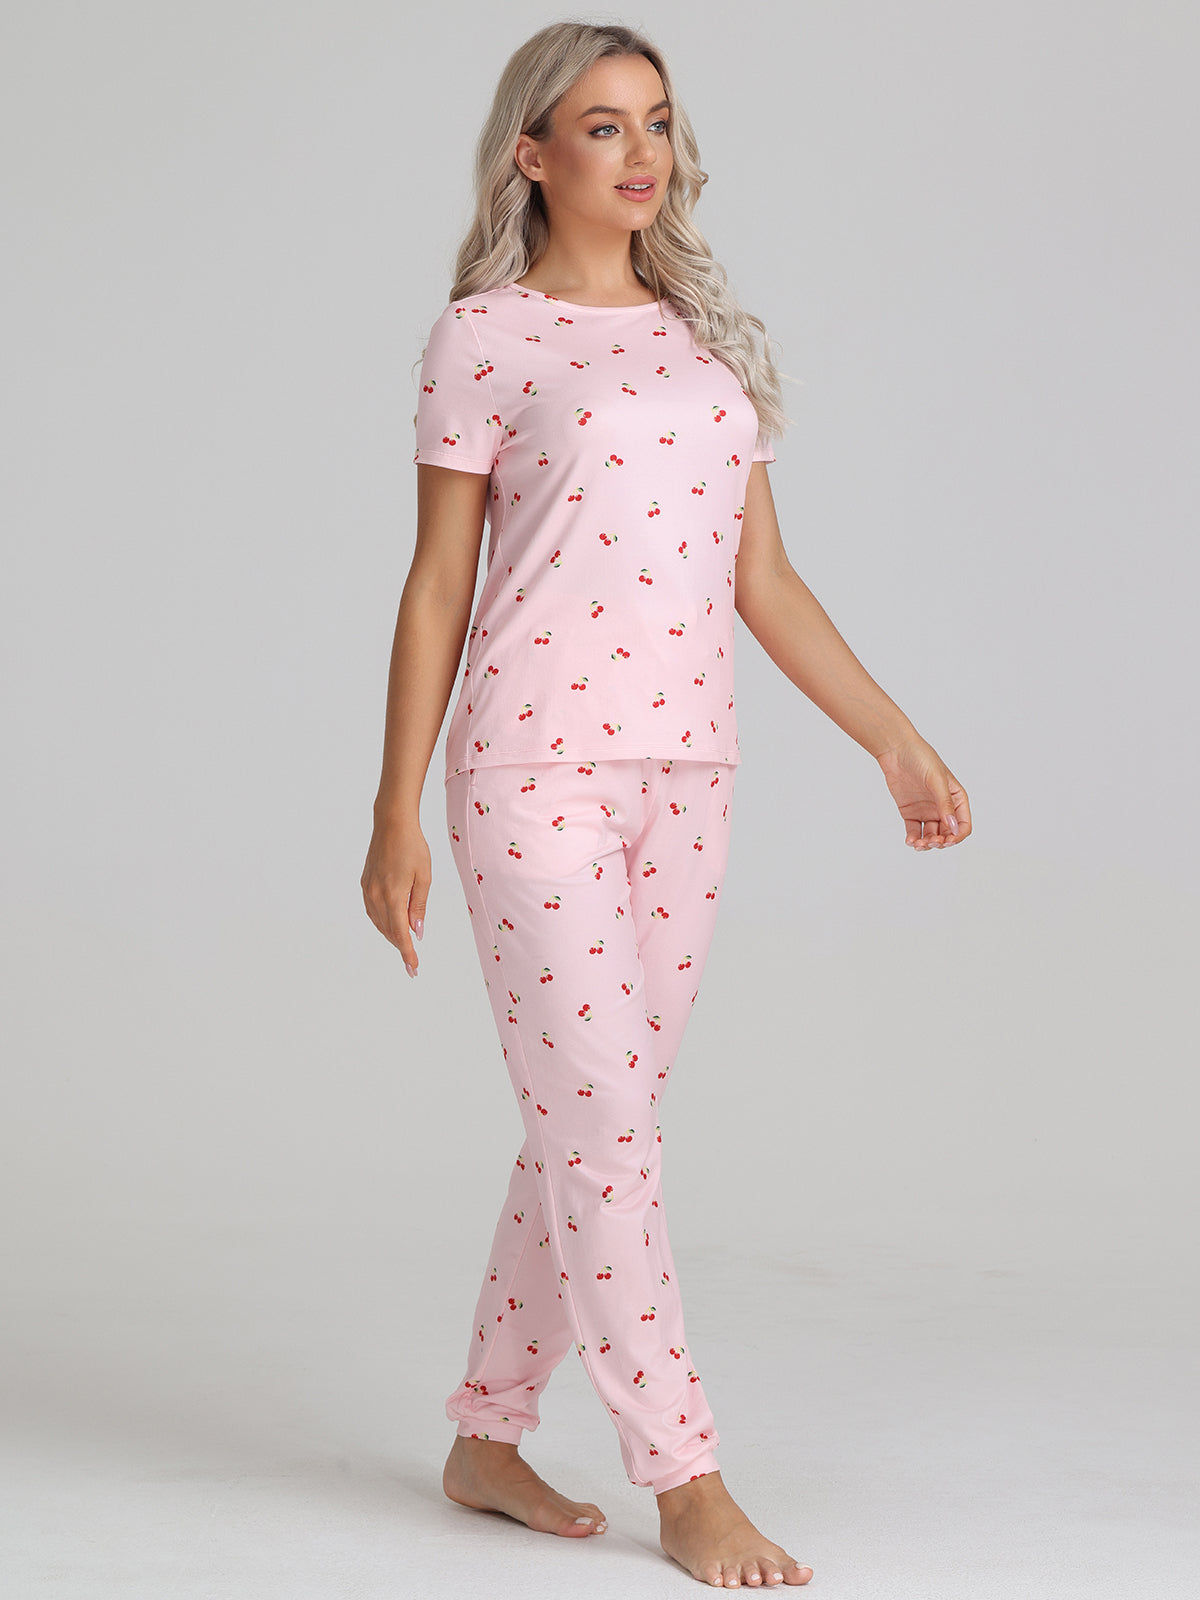 Cherry Print Pajamas Set